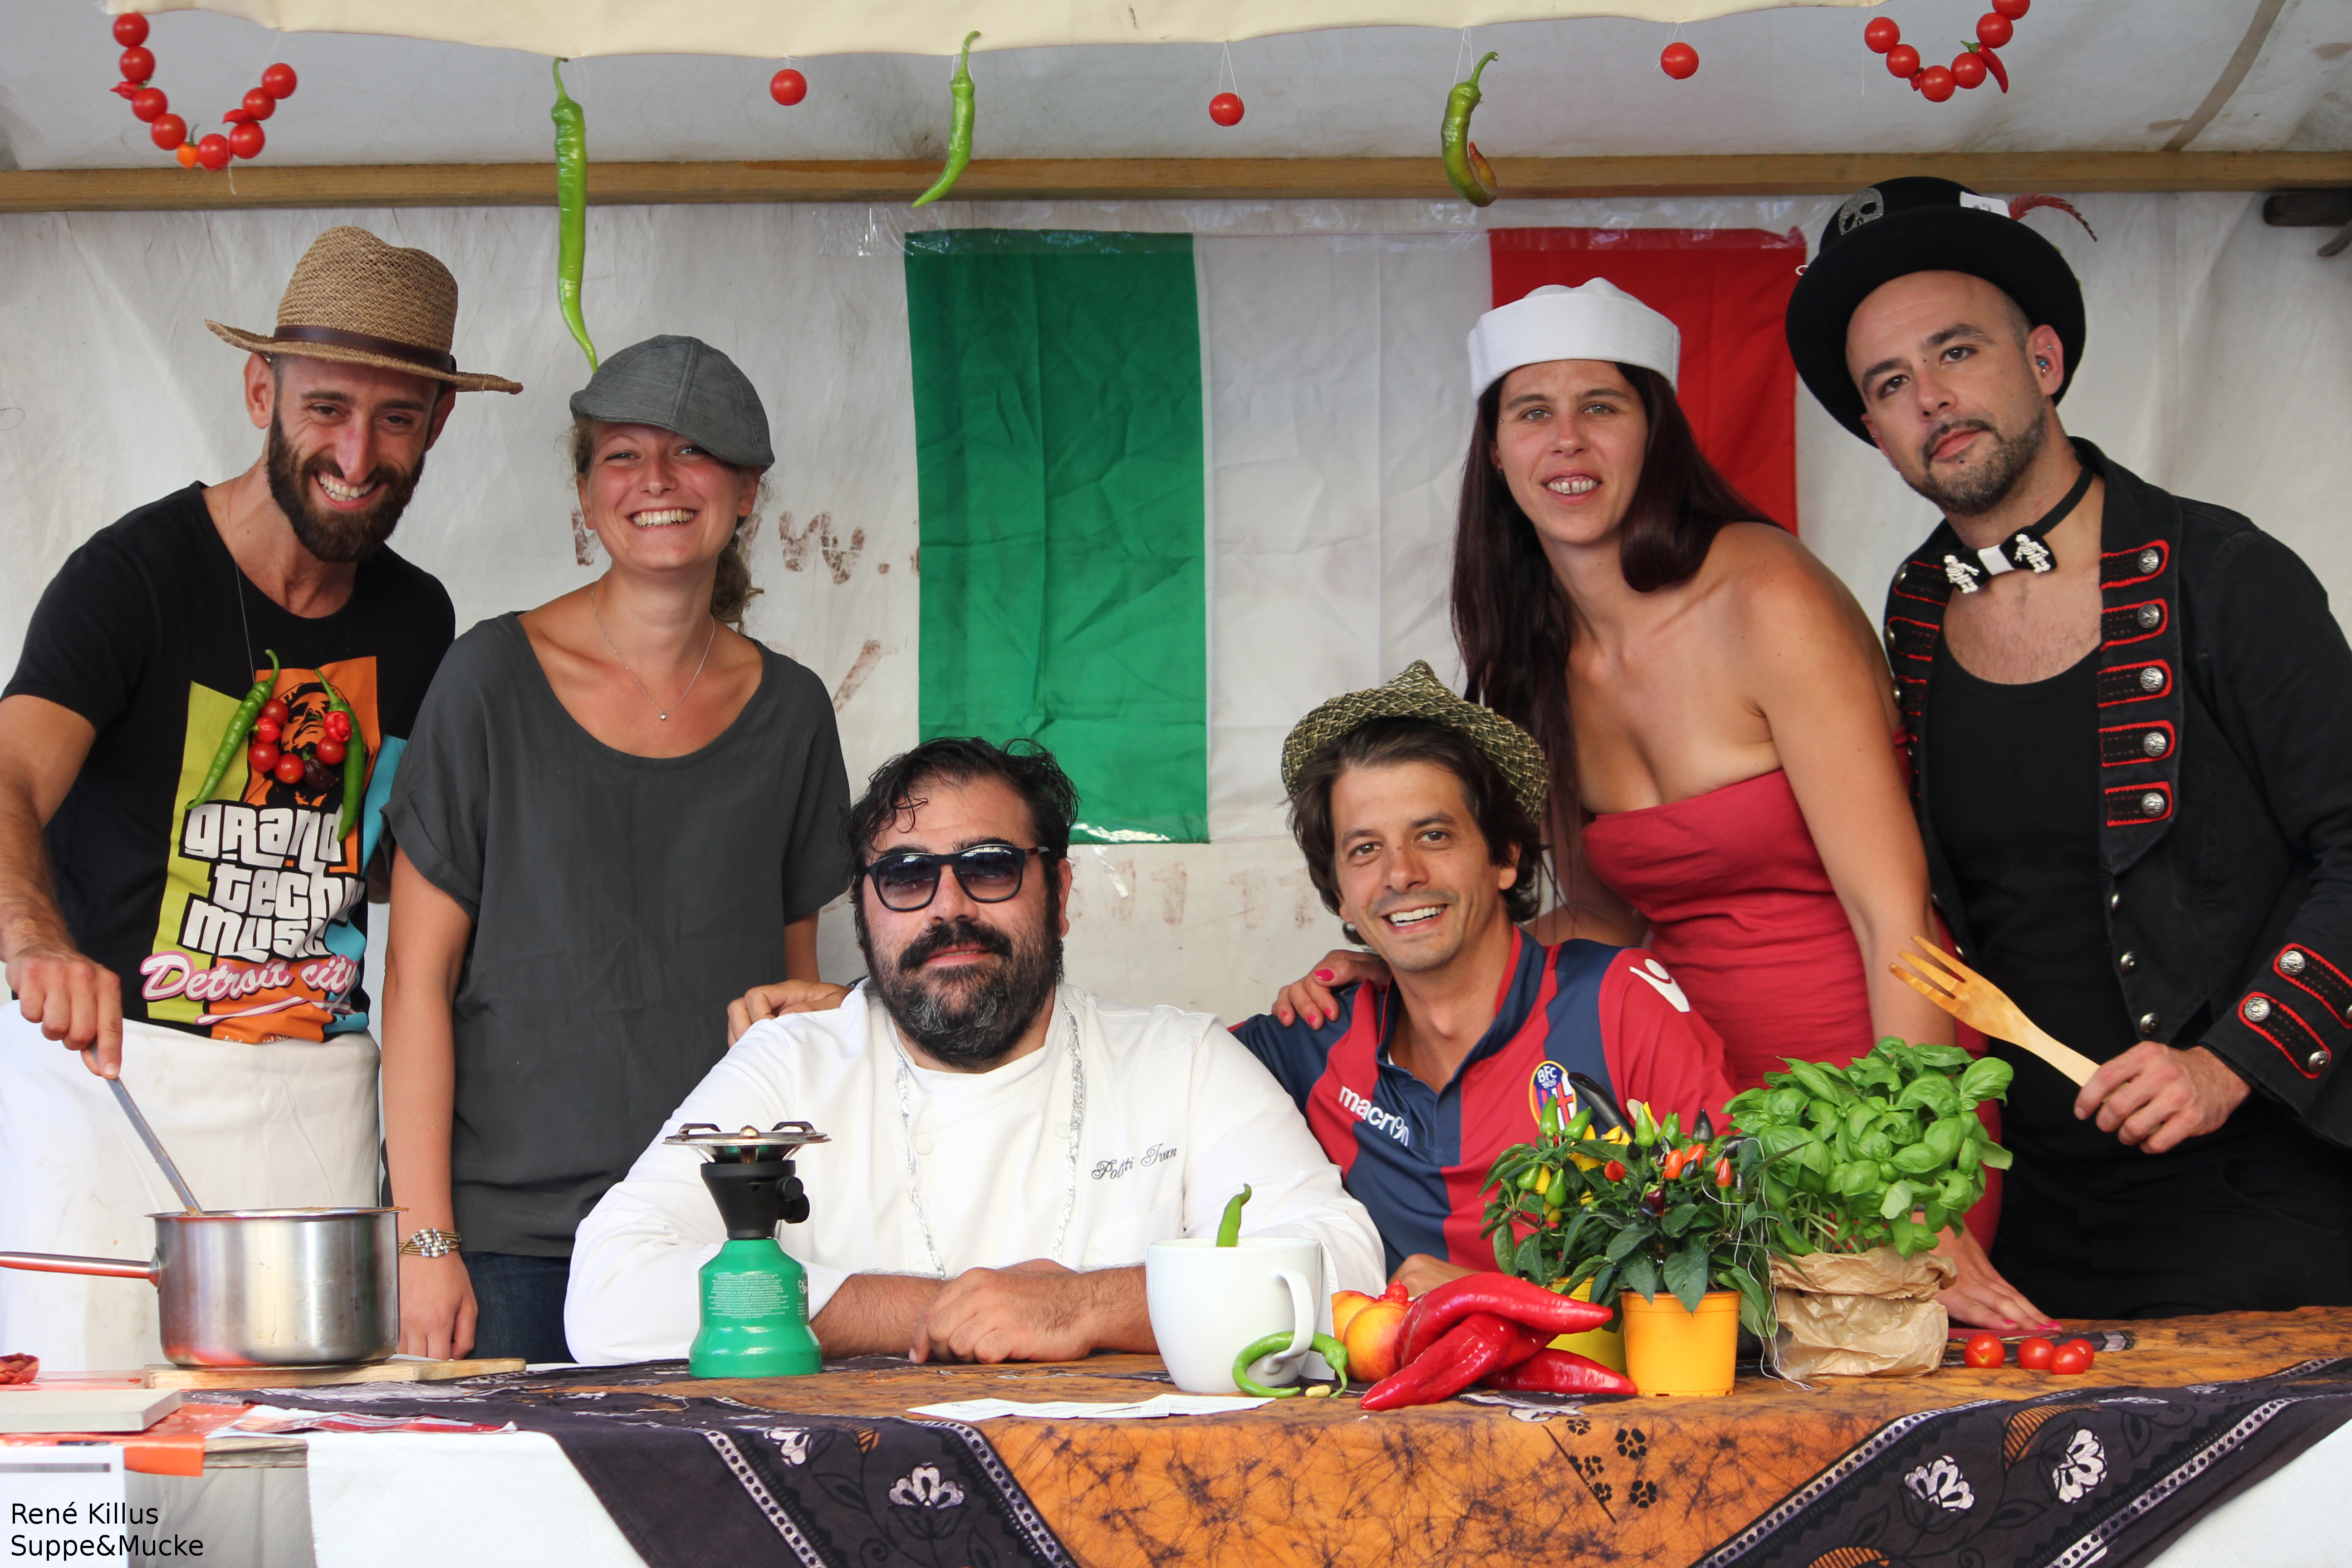 Il gruppo vincitore della Giuria Popolare 2015 con “Il Gran Bailani”, zuppa creata da Ivan Poletti. Qui fotografati al Festival della Zuppa di Berlino, vincitori del primo premio 2015